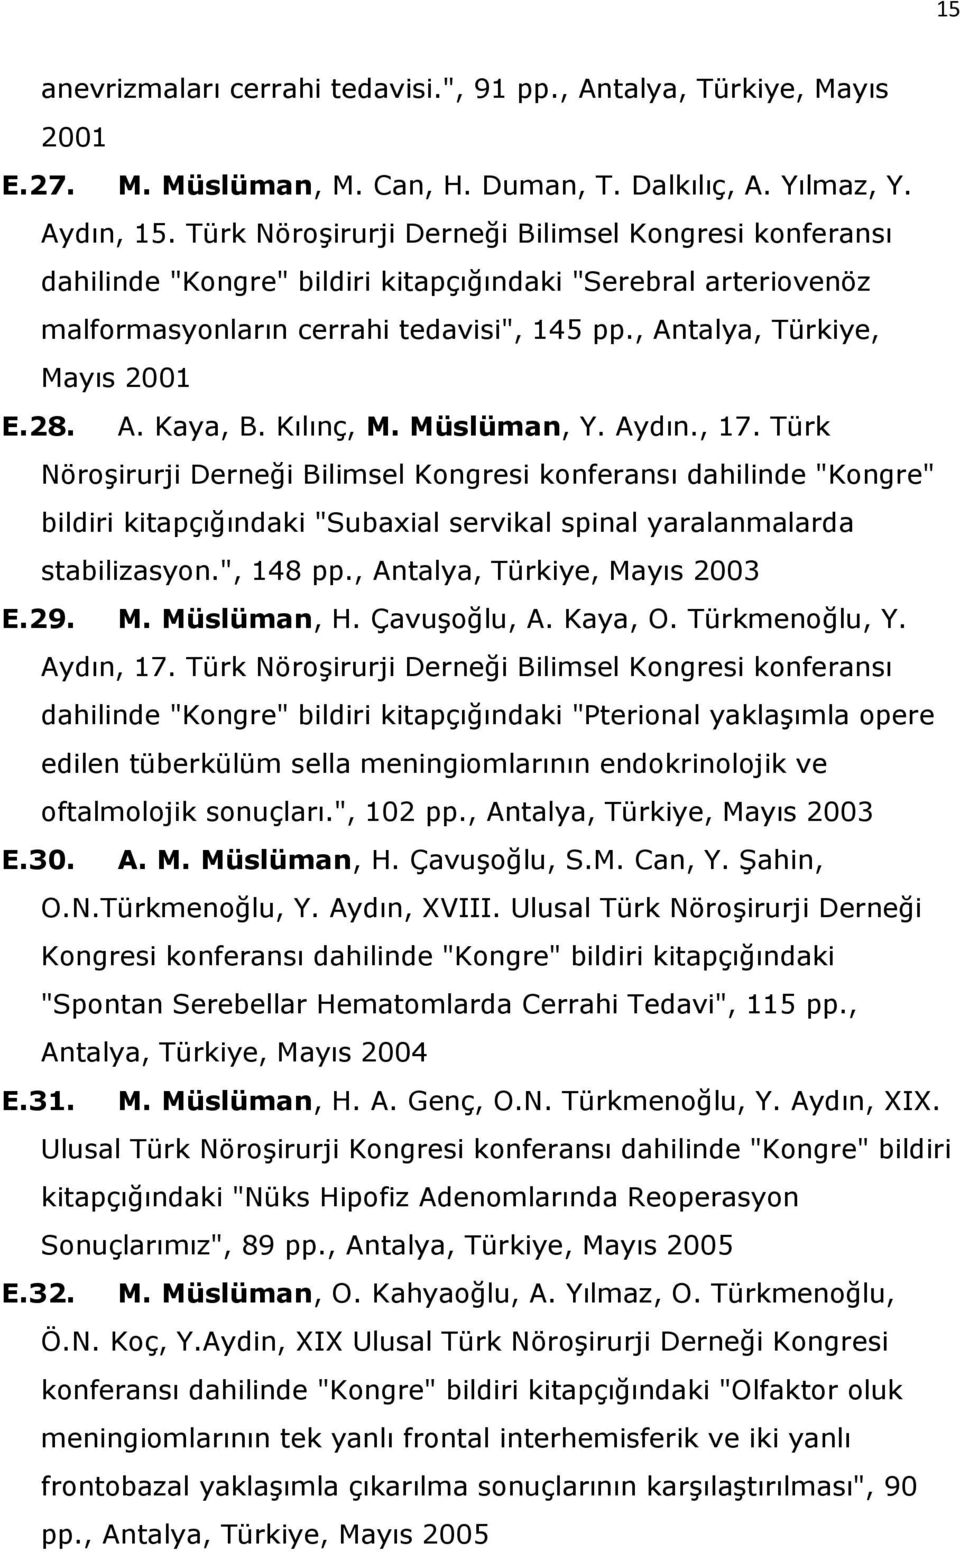 A. Kaya, B. Kılınç, M. Müslüman, Y. Aydın., 17. Türk Nöroşirurji Derneği Bilimsel Kongresi konferansı dahilinde "Kongre" bildiri kitapçığındaki "Subaxial servikal spinal yaralanmalarda stabilizasyon.